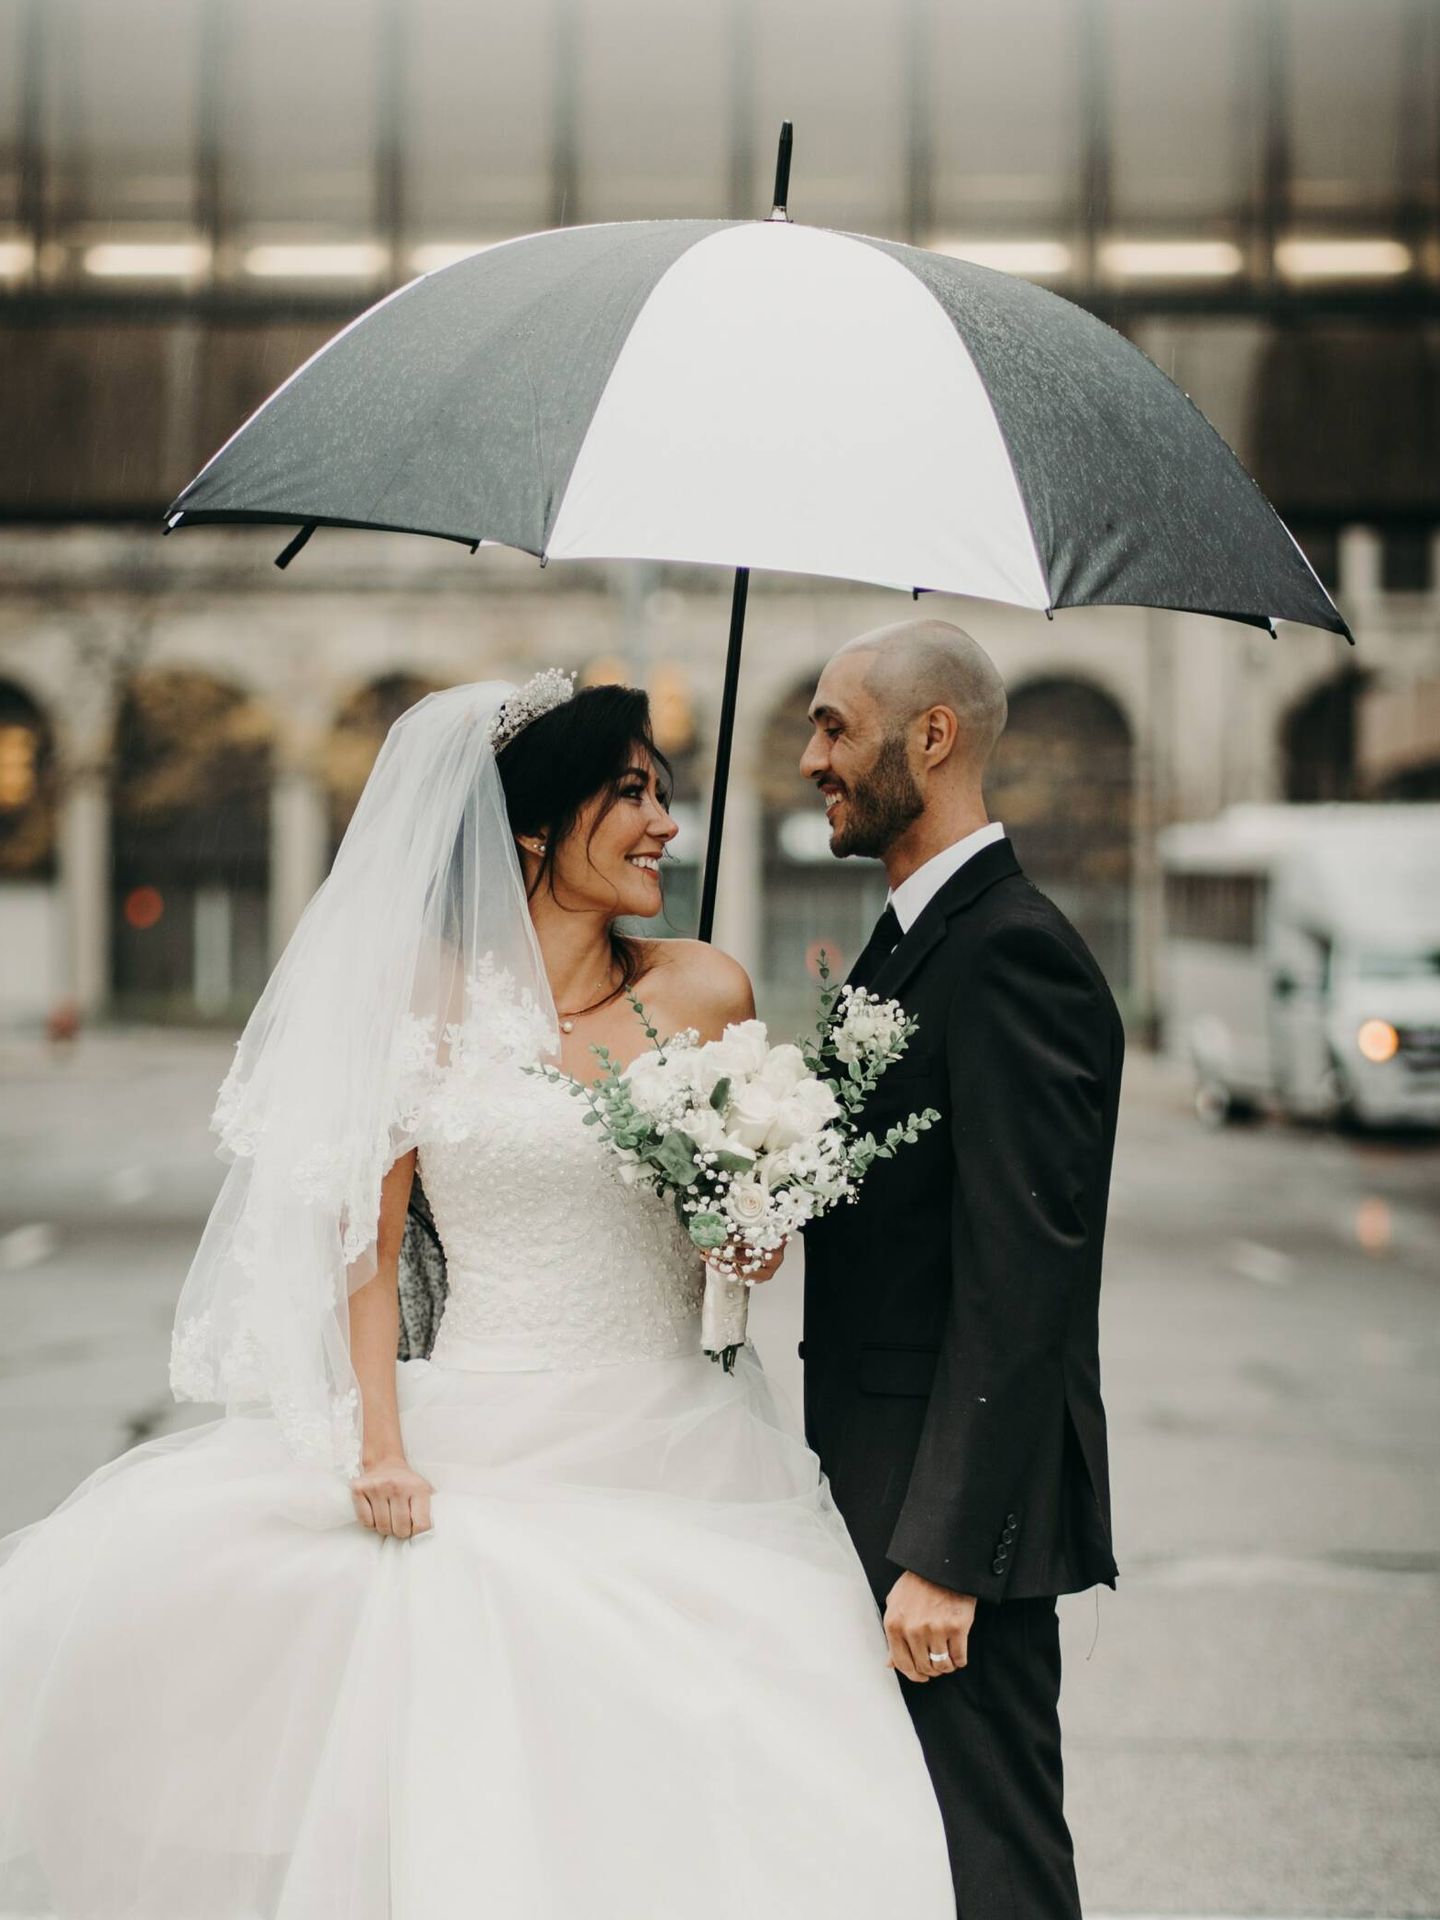 Soluciones para que la lluvia no arruine la boda. (Pexels/ZARA HAMDANE)